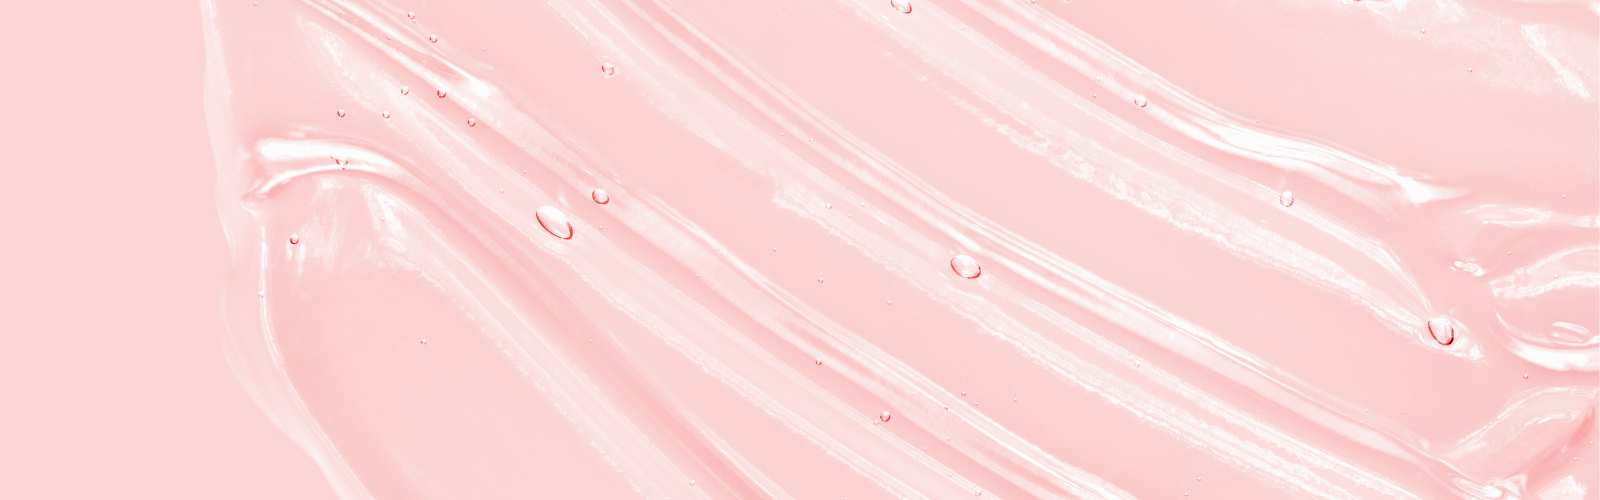 Light pink gel on a light pink background